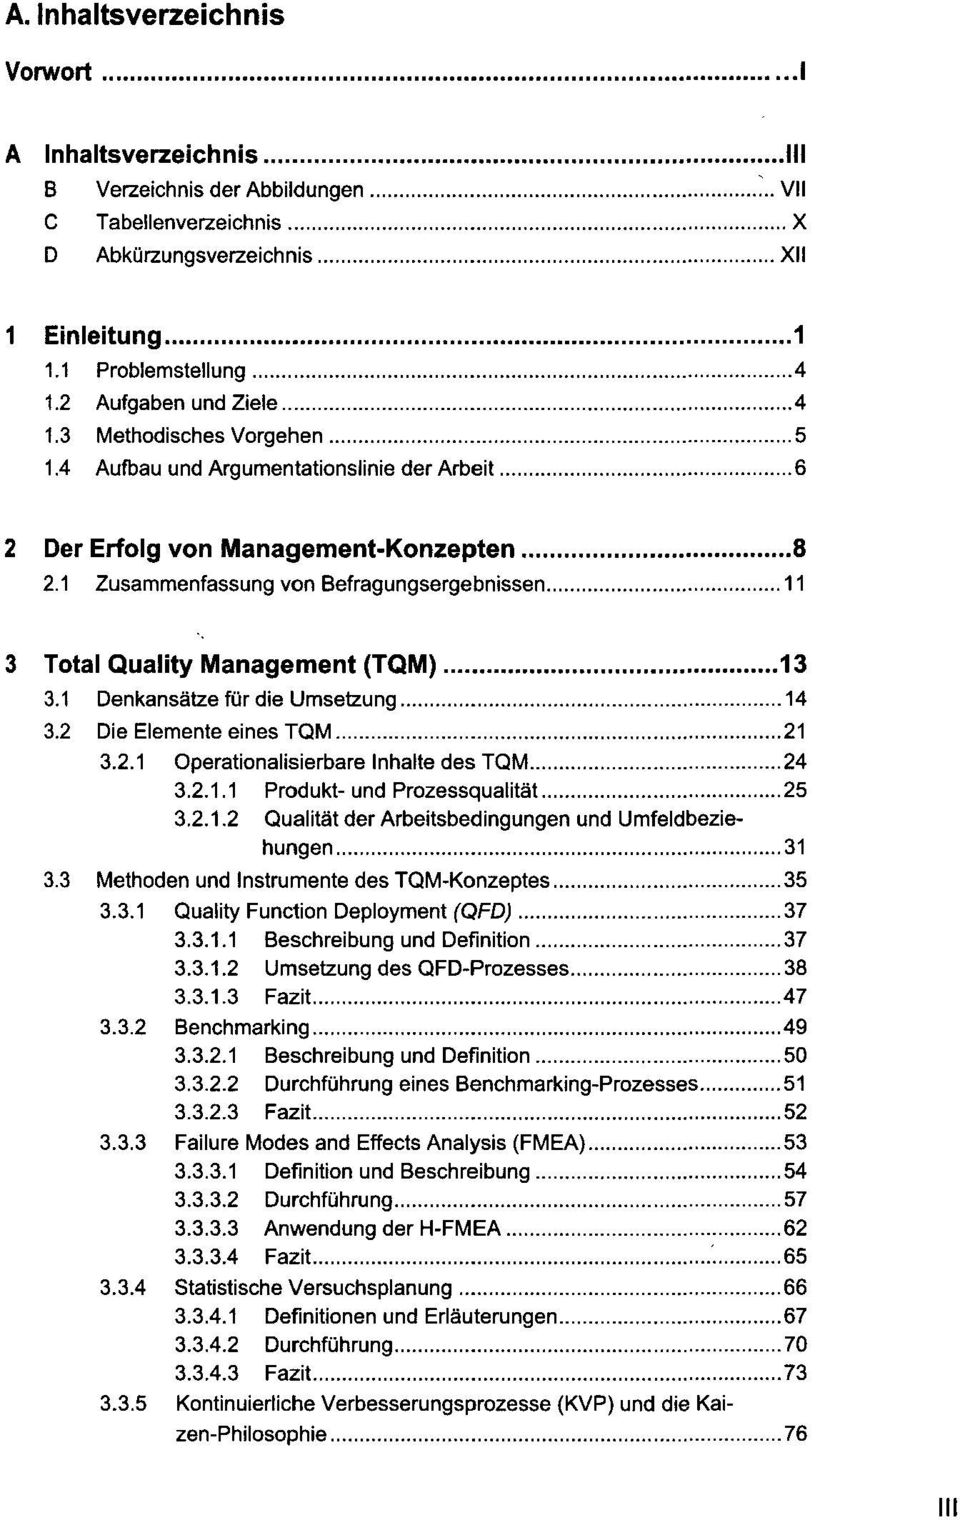 1 Zusammenfassung von Befragungsergebnissen 11 3 Total Quality Management (TQM) 13 3.1 Denkansätze für die Umsetzung 14 3.2 Die Elemente eines TQM 21 3.2.1 Operationalisierbare Inhalte des TQM 24 3.2.1.1 Produkt- und Prozessqualität 25 3.